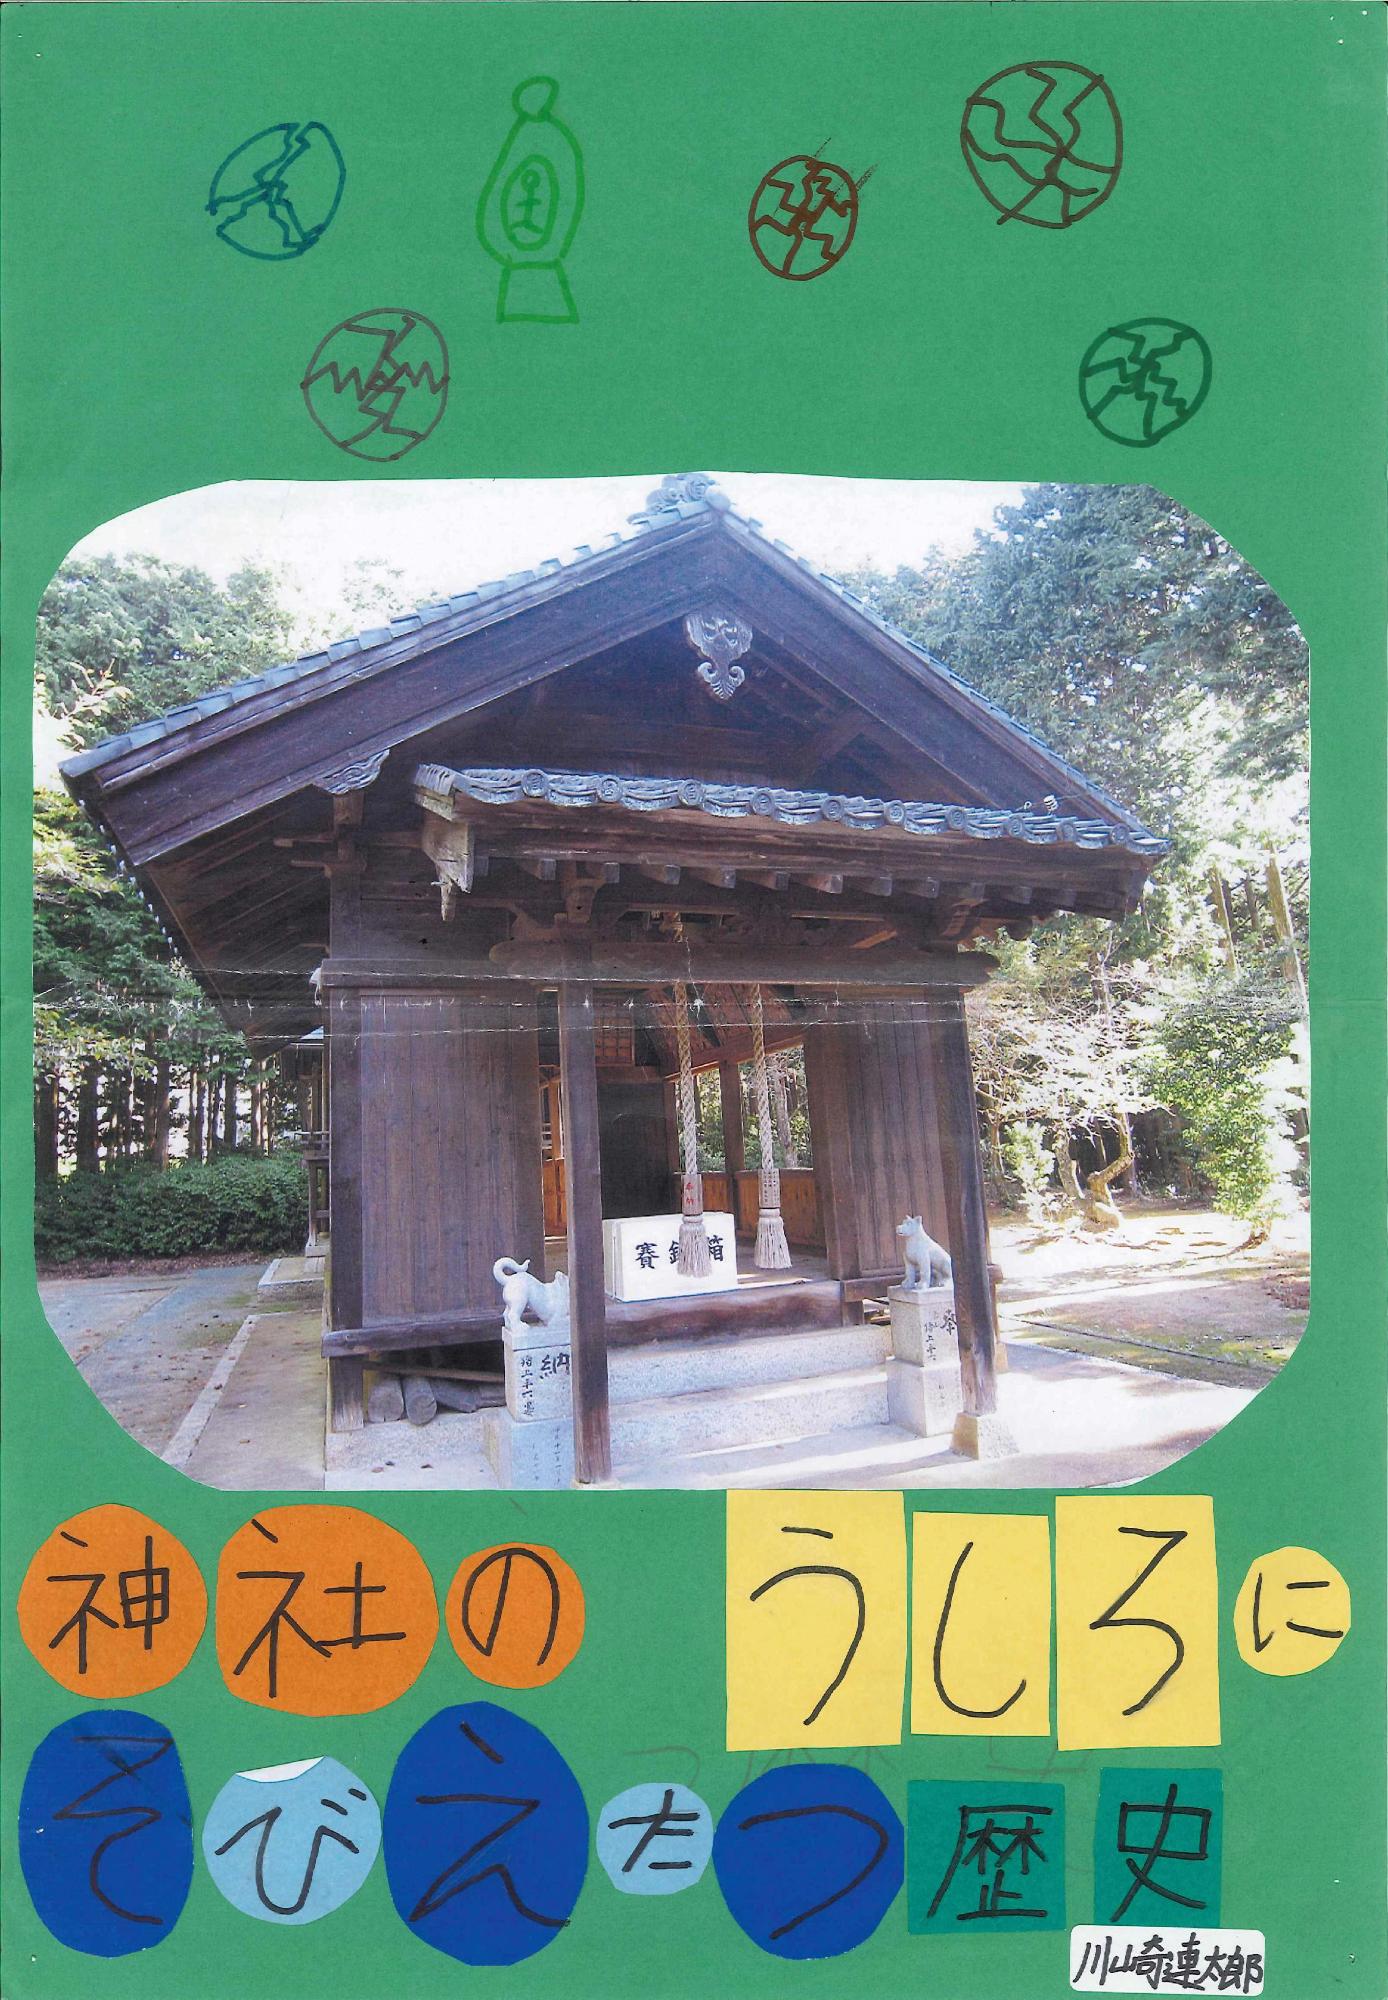 向かい合うように置かれた狛犬とその奥の神社の本堂の写真に「神社のうしろにそびえたつ歴史」というキャッチコピーが書かれたポスターの写真